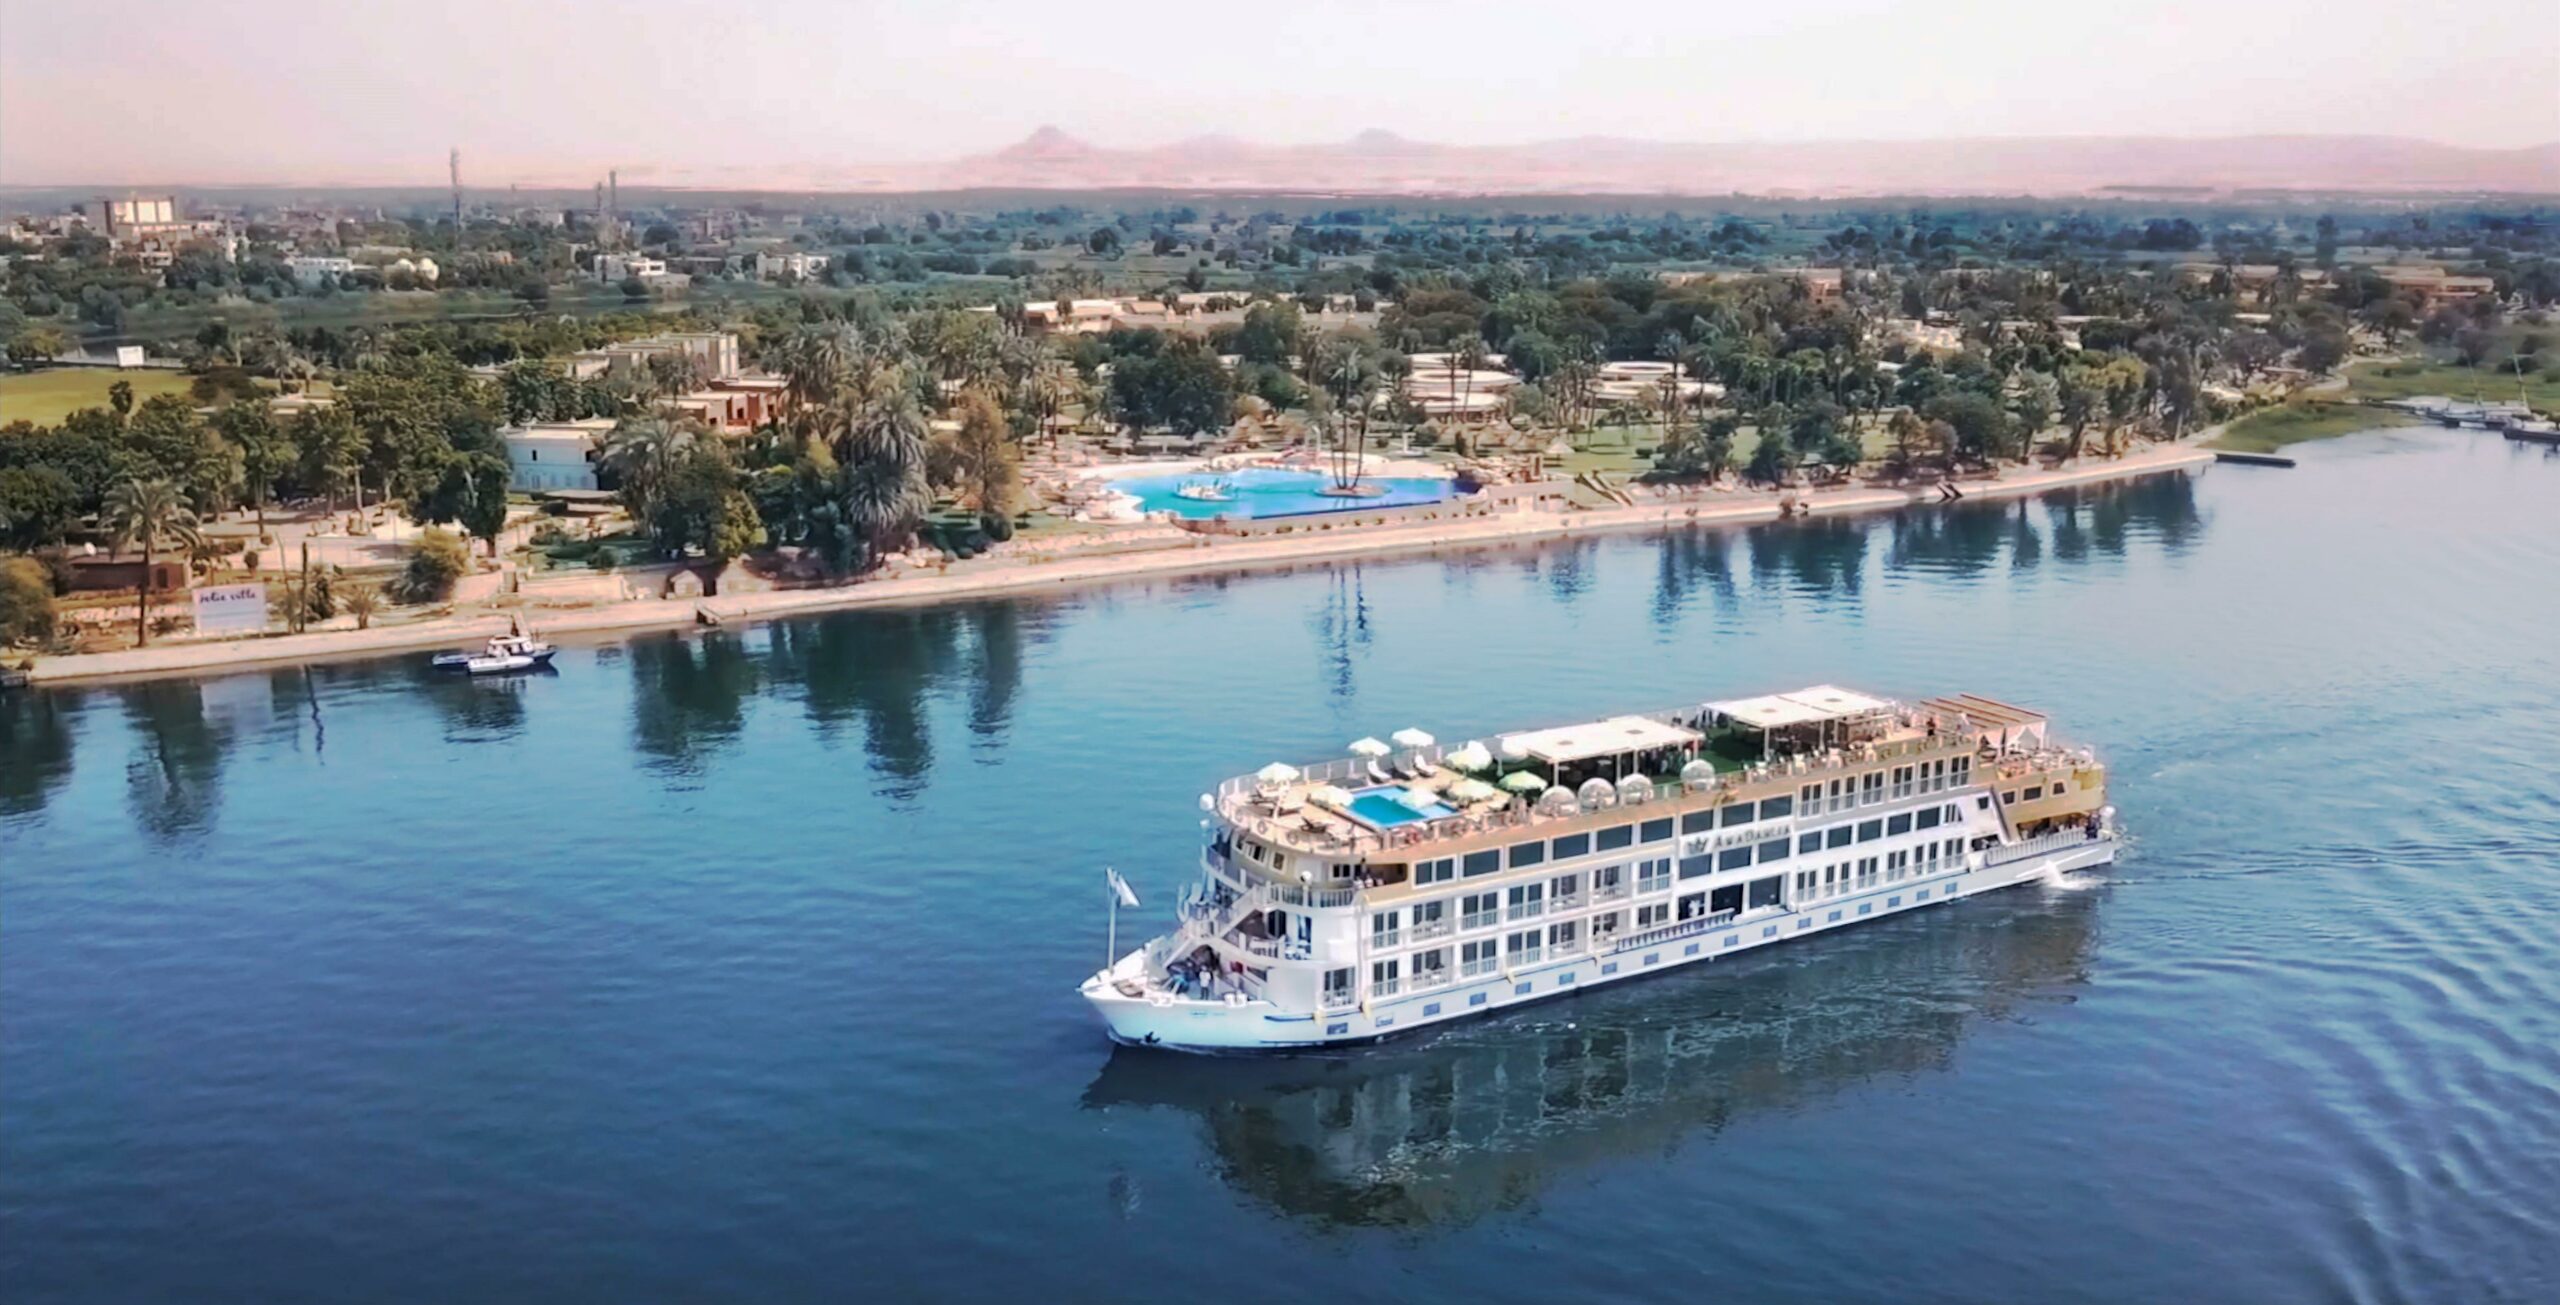 amawaterways egypt cruise